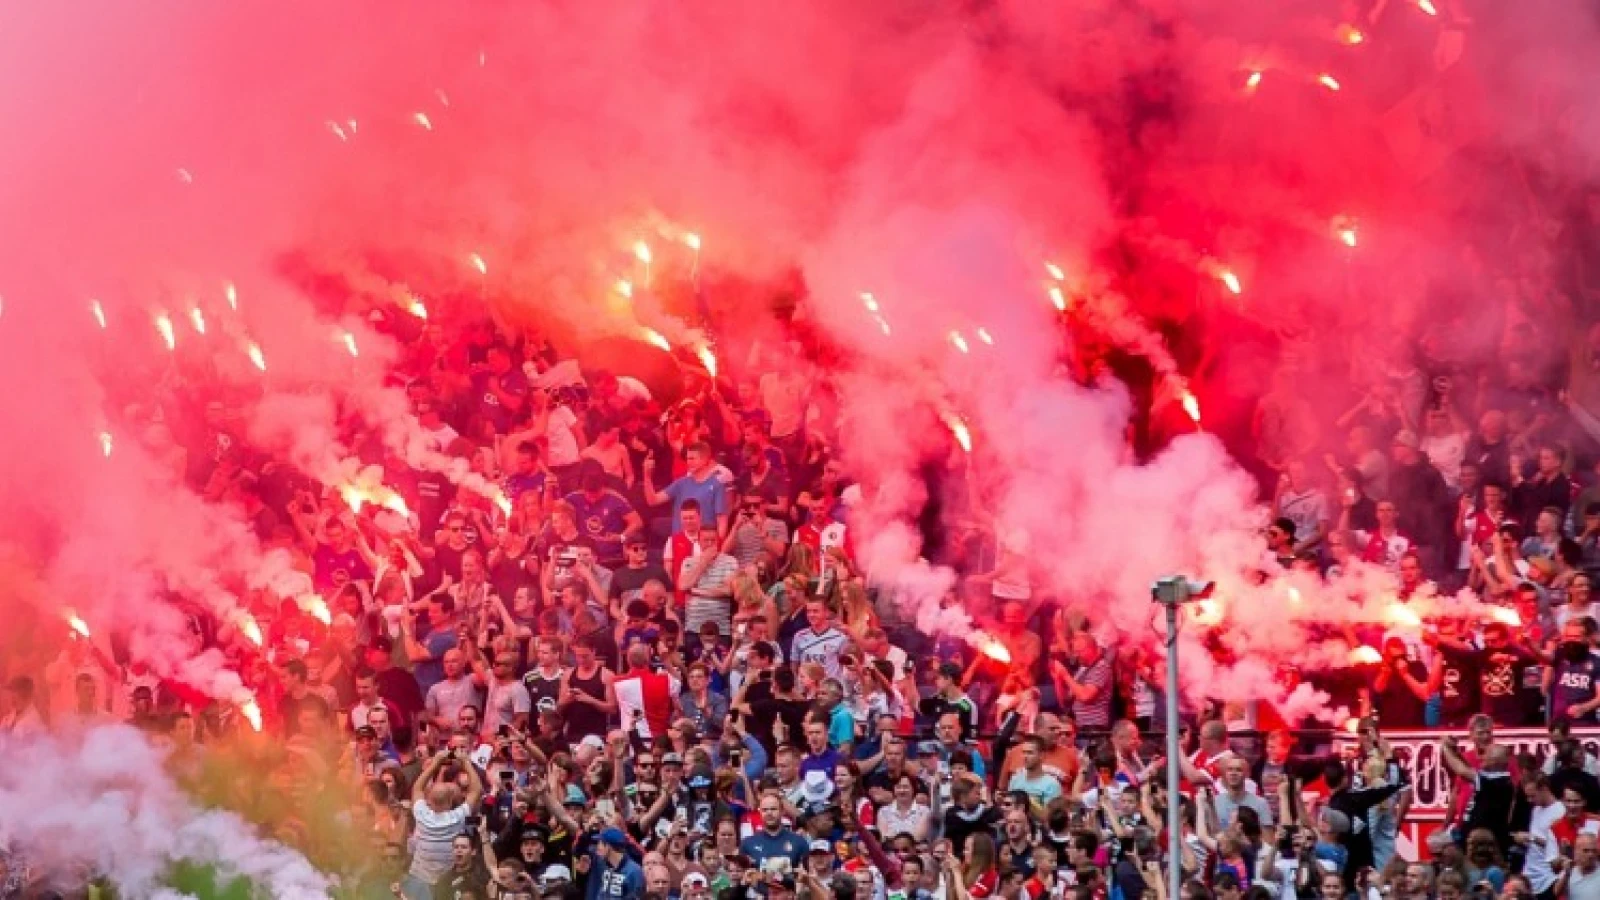 'Feyenoorddirectie verwacht knallende zomer, WK als aanjager'